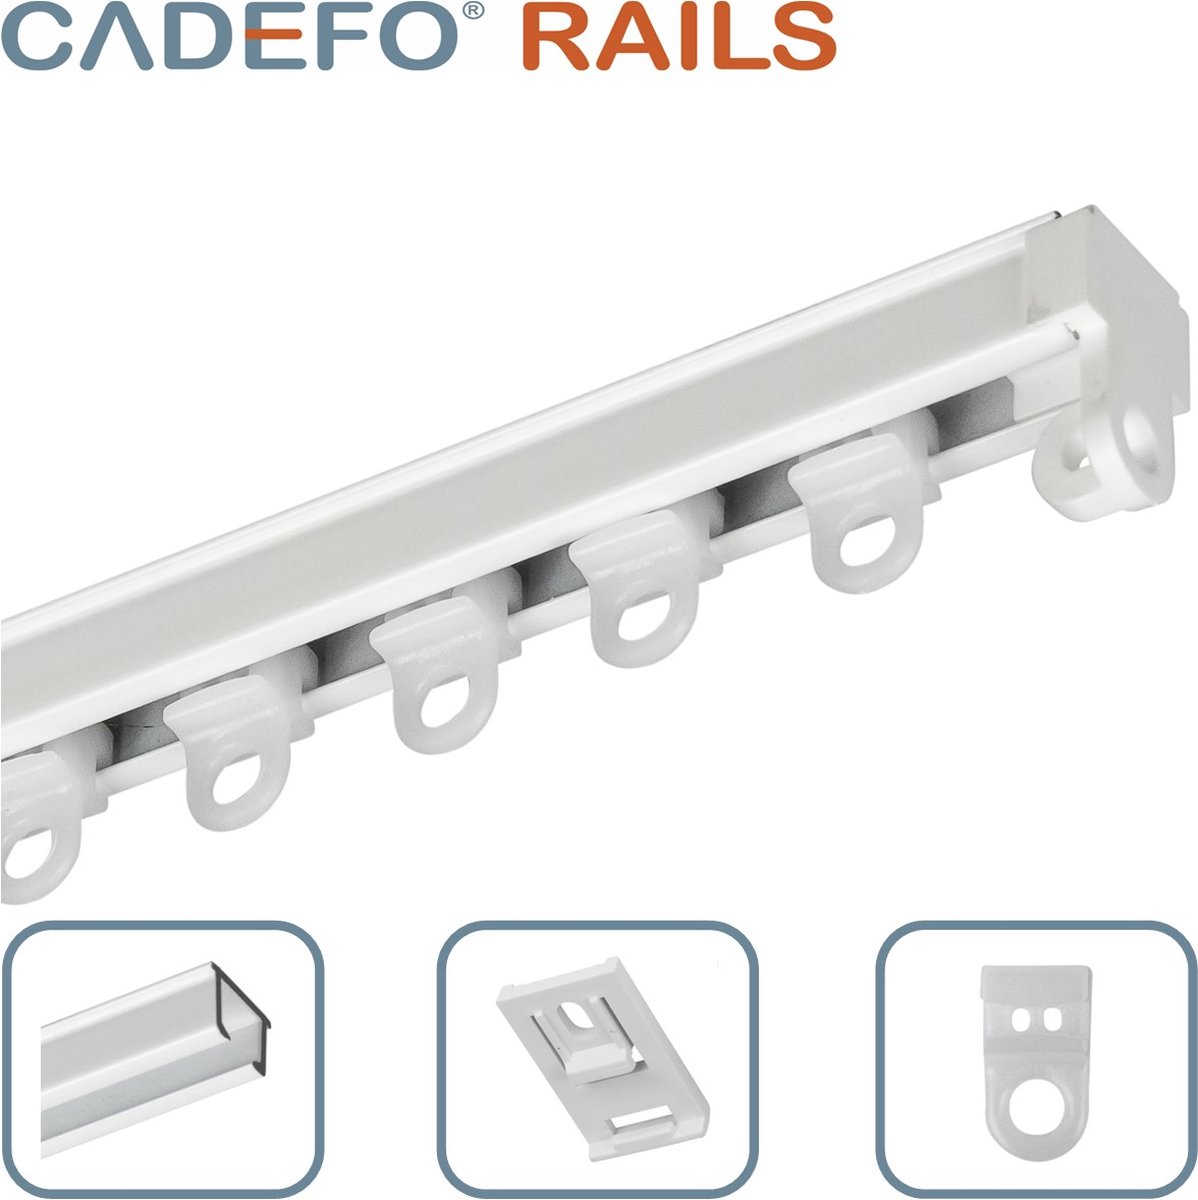 CADEFO RAILS (201 - 250 cm) Gordijnrails - Compleet op maat! - UIT 1 STUK - Leverbaar tot 6 meter - Plafondbevestiging - Lengte 216 cm